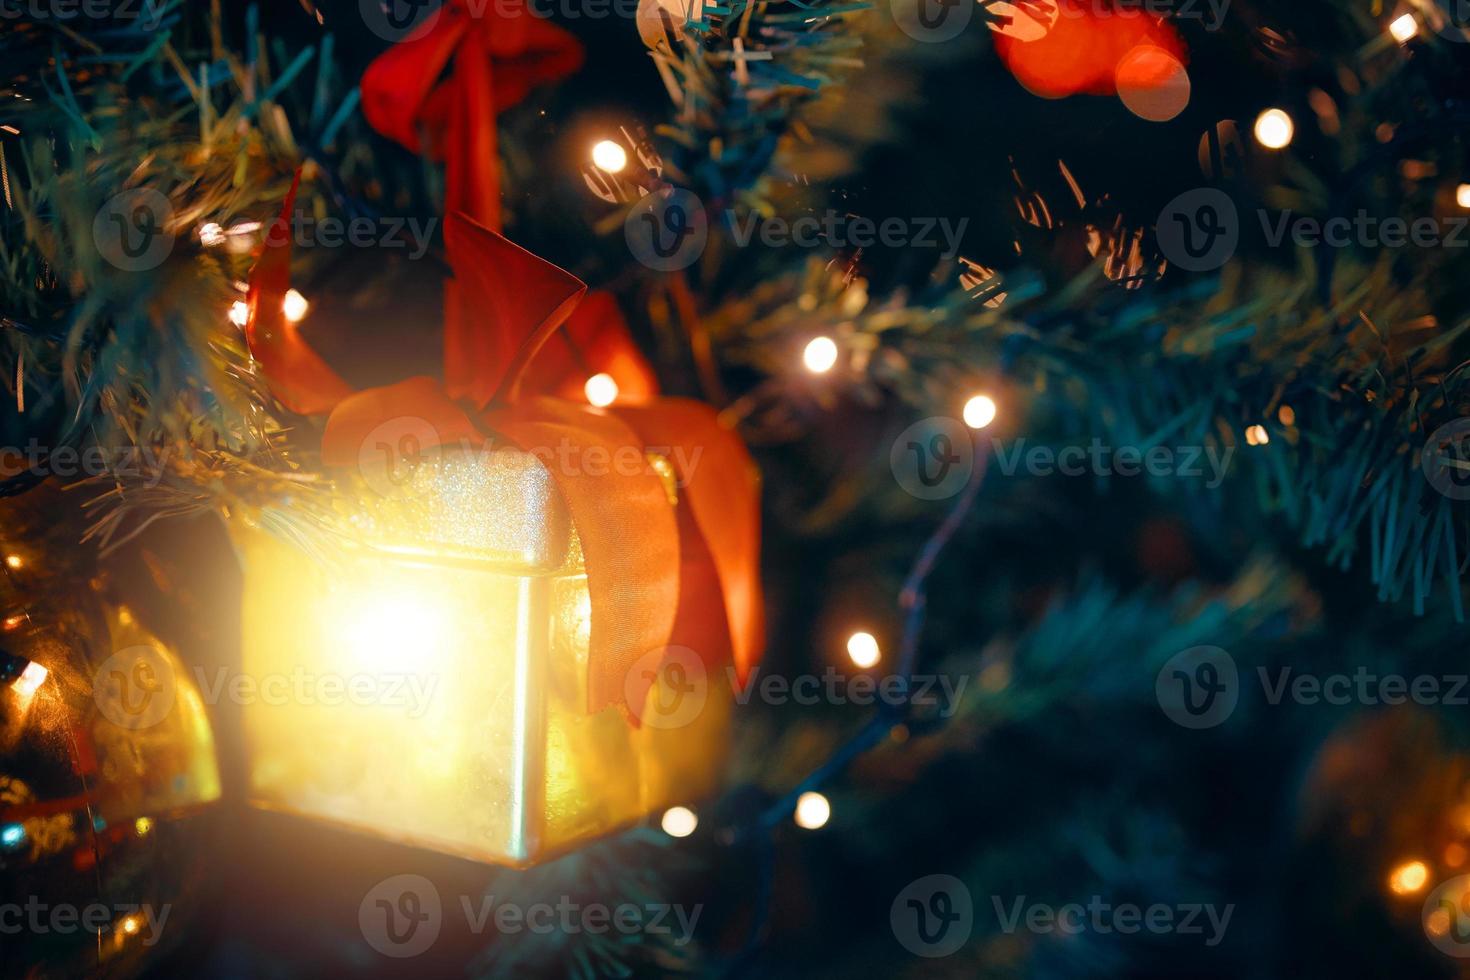 kerstboom met versieringen en geschenken. foto